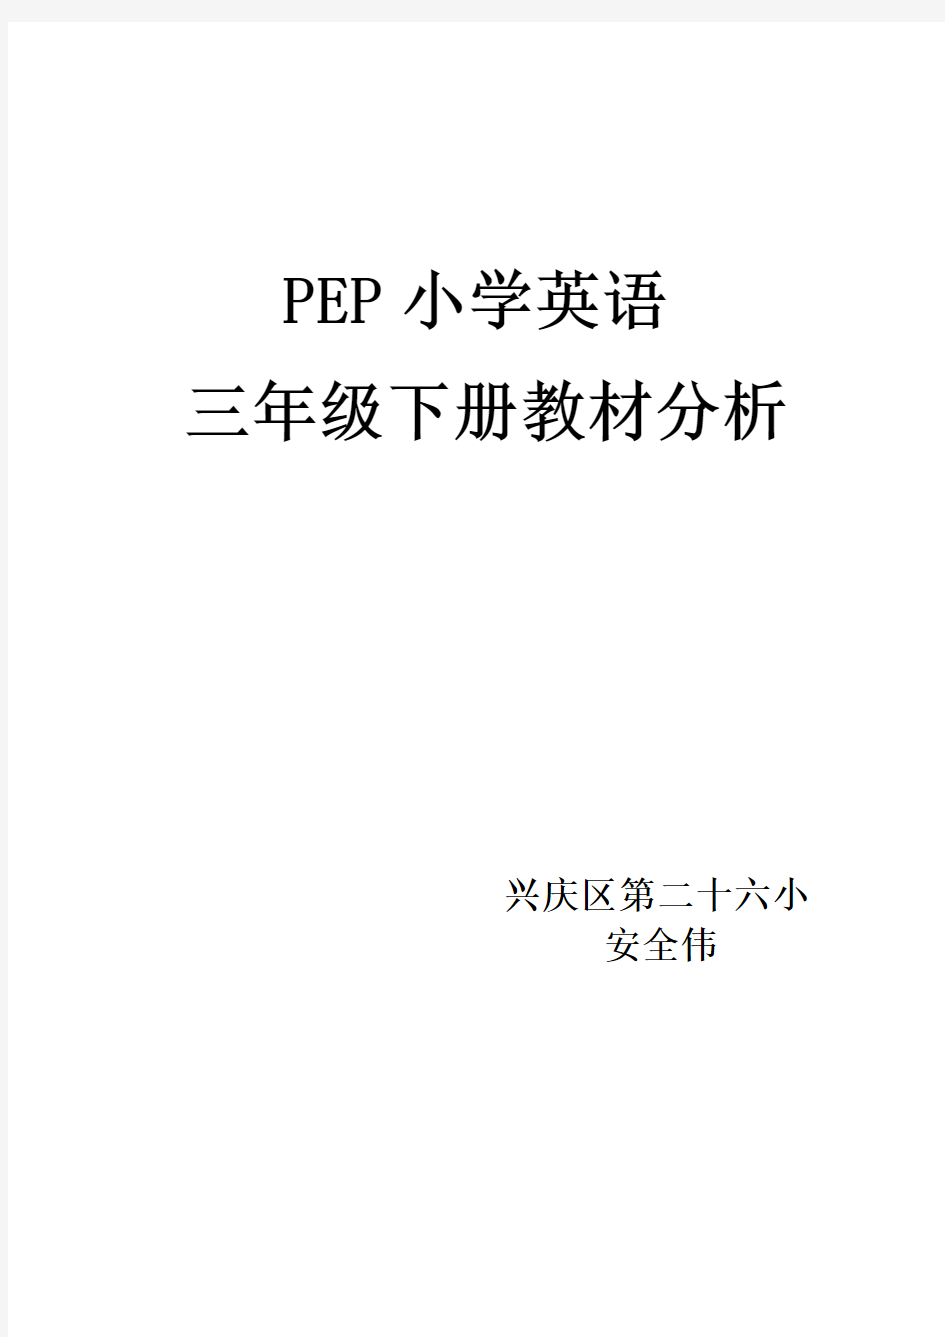 PEP小学三年级英语下册教材分析